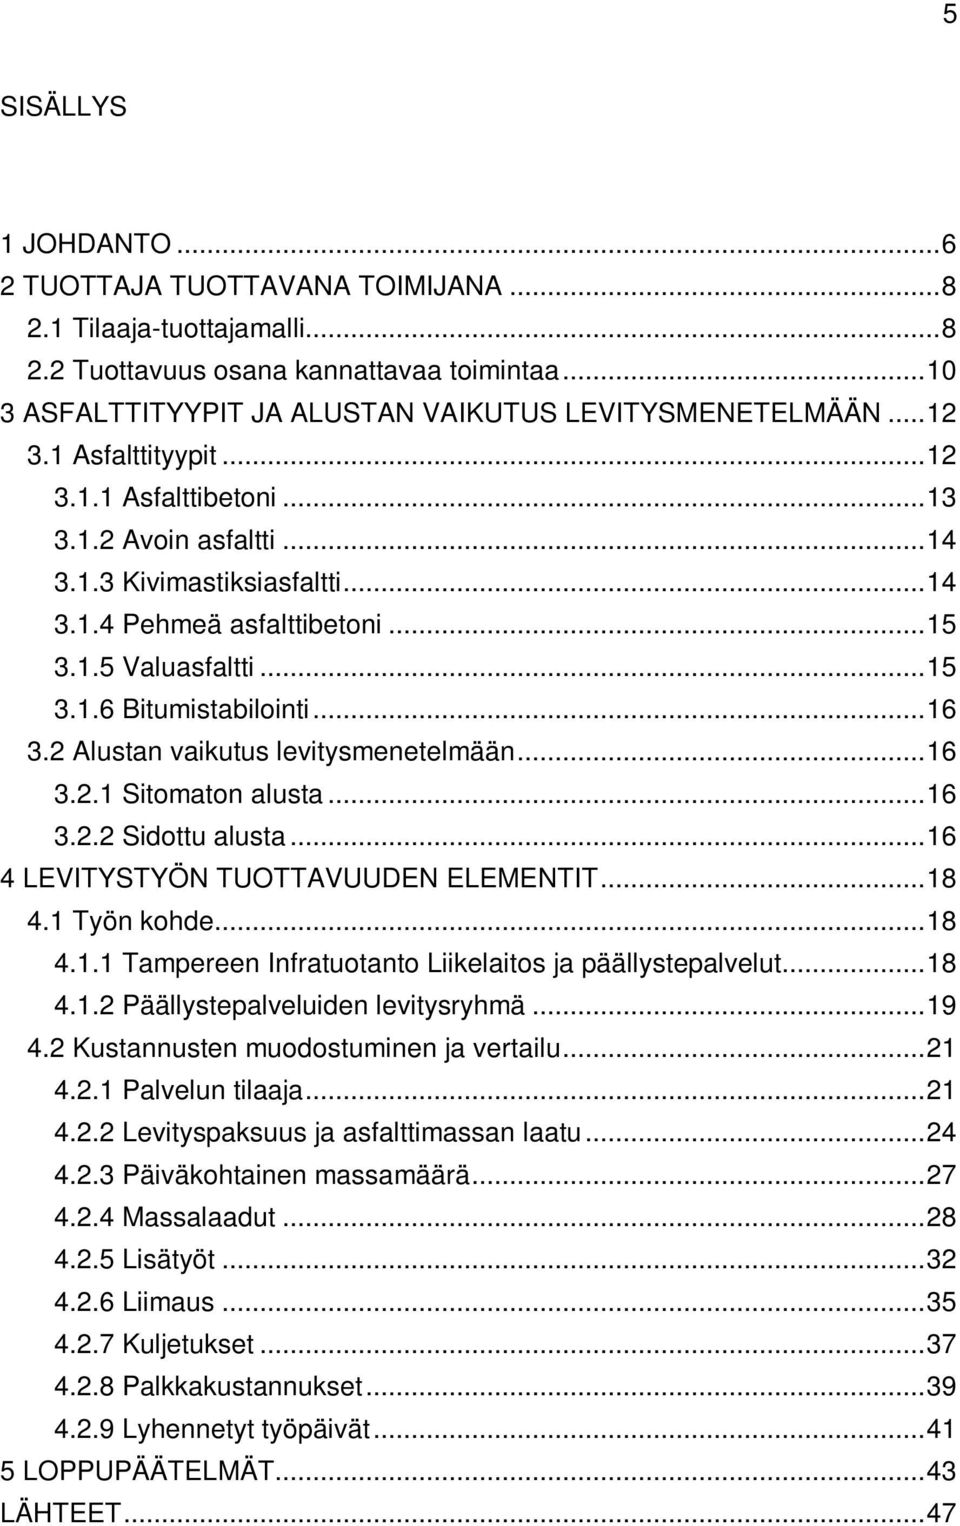 .. 16 3.2 Alustan vaikutus levitysmenetelmään... 16 3.2.1 Sitomaton alusta... 16 3.2.2 Sidottu alusta... 16 4 LEVITYSTYÖN TUOTTAVUUDEN ELEMENTIT... 18 4.1 Työn kohde... 18 4.1.1 Tampereen Infratuotanto Liikelaitos ja päällystepalvelut.